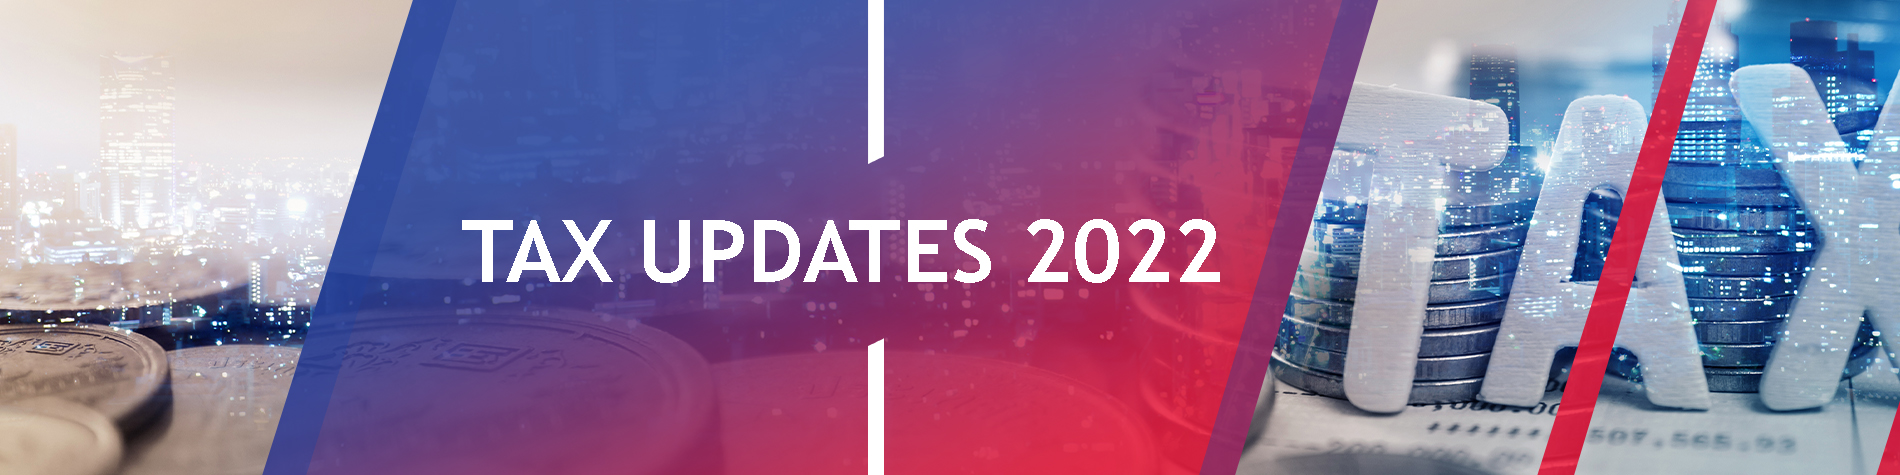 Tax Updates 2022